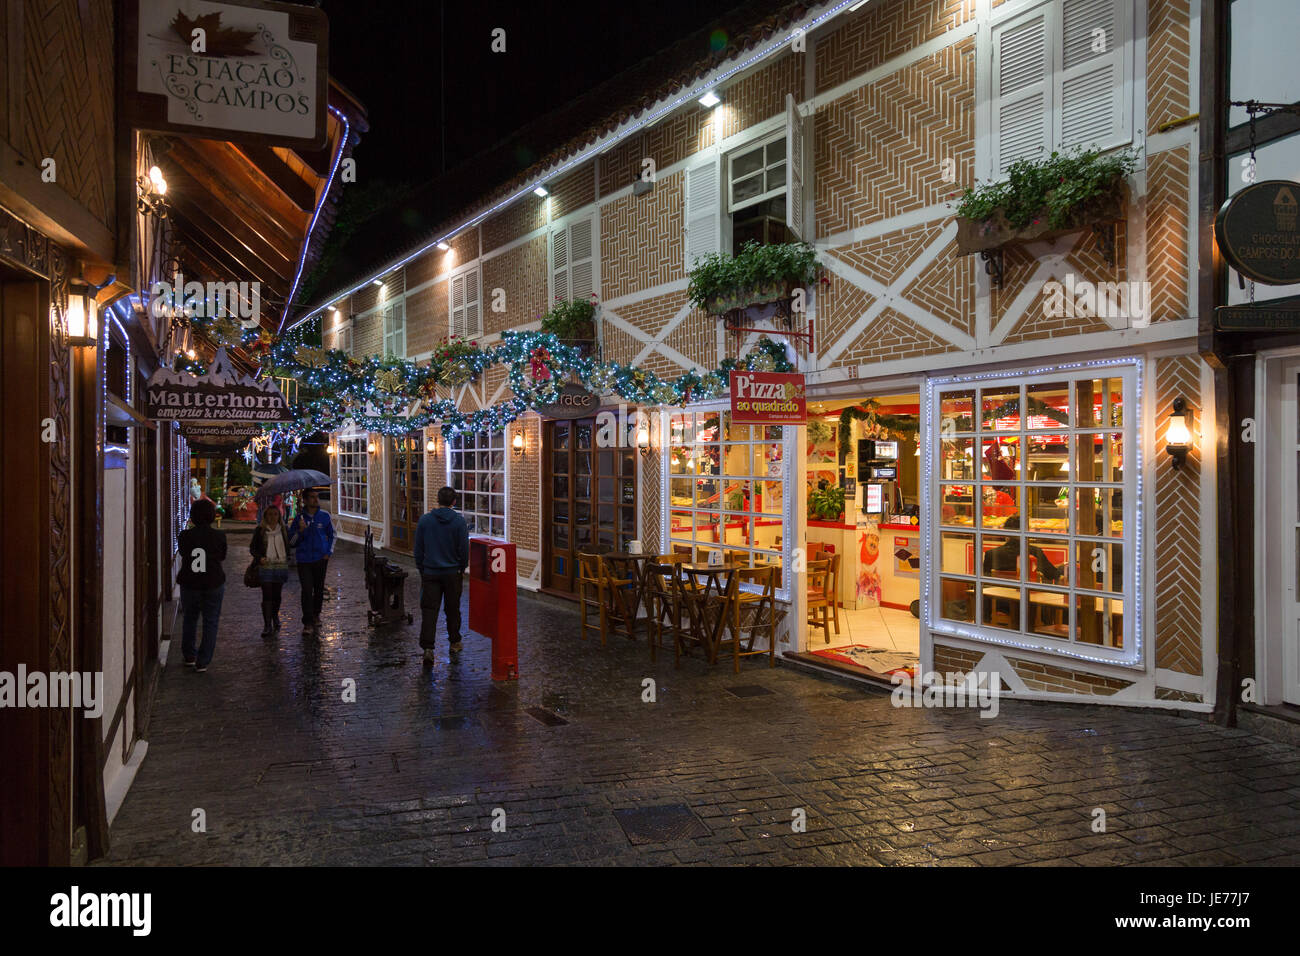 Fußgängerzone, europäische Architektur im Schweizer und deutschen Stil, farbenfrohe Weihnachtsdekorationen am Boulevard Geneve, Capivari, Campos do Jordao Stockfoto